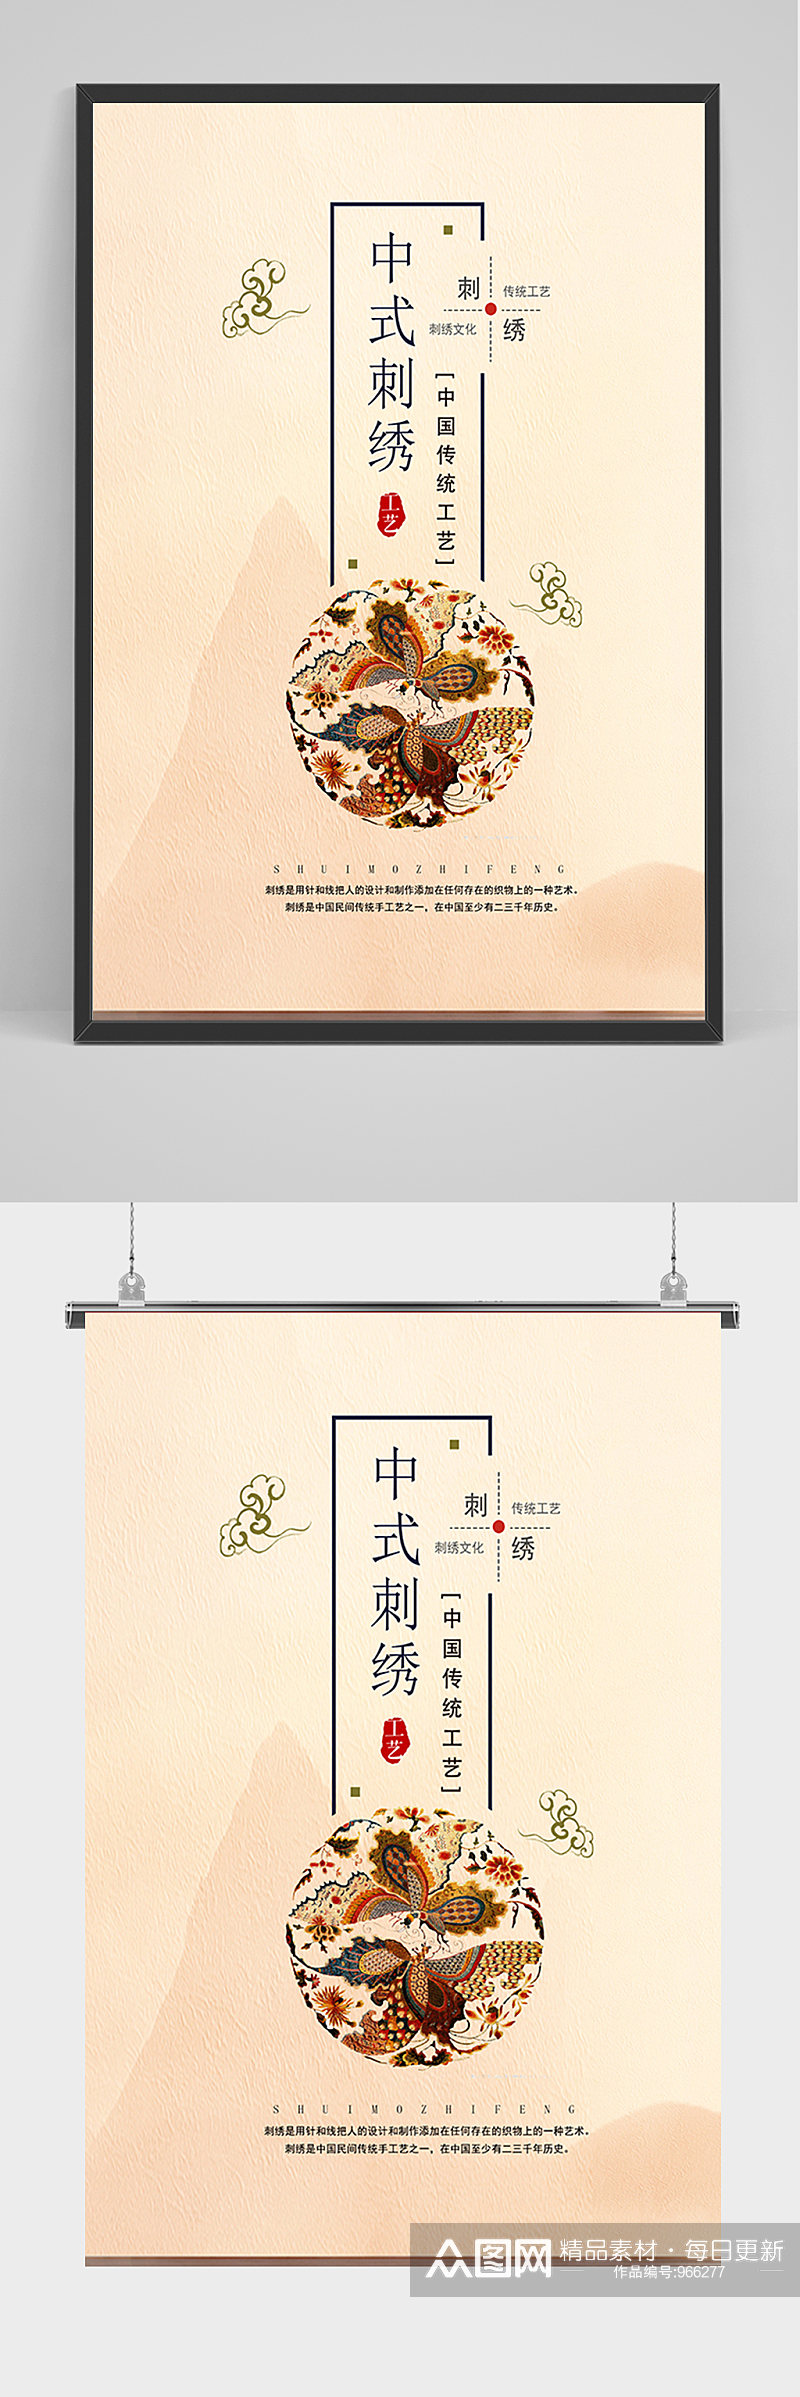 简约中国刺绣海报素材